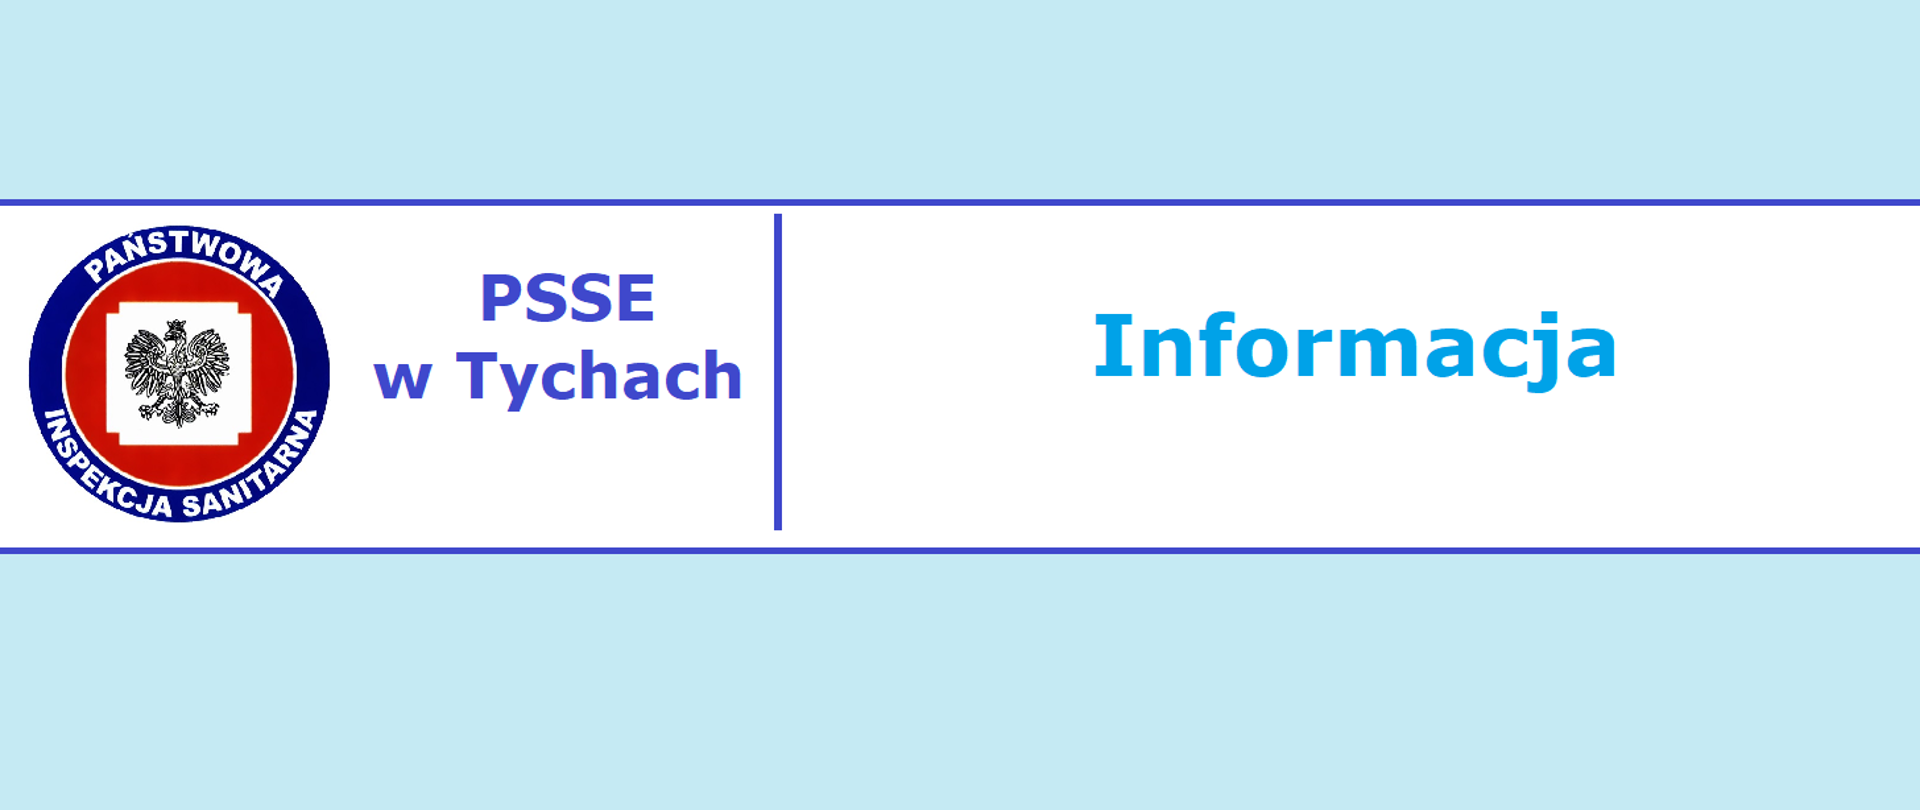 PSSE w Tychach - informacja